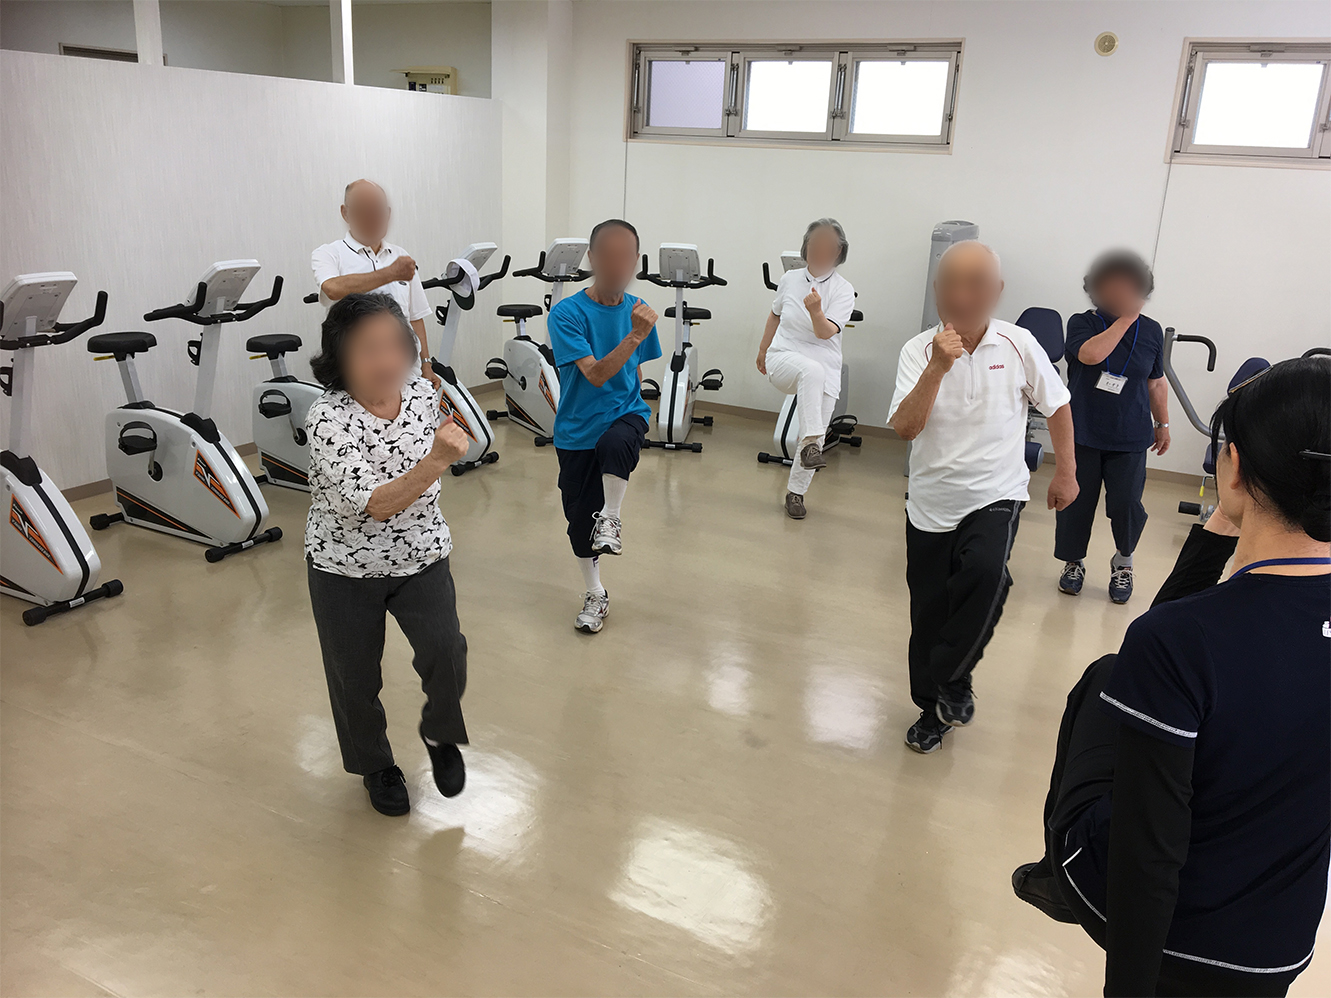 体操教室に集まって運動する高齢者